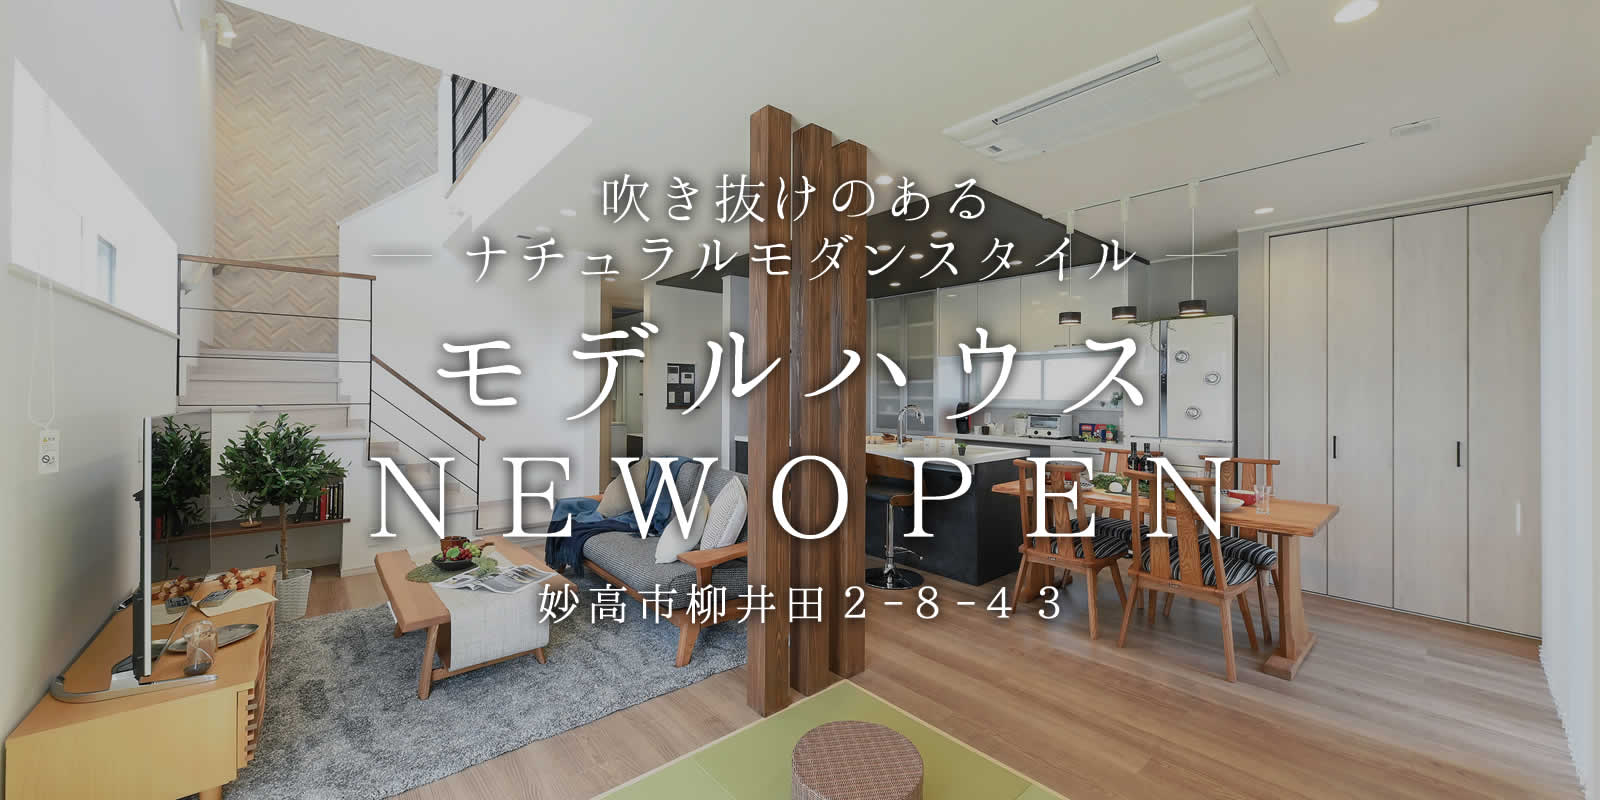 妙高市柳井田に新しいモデルハウスがオープン